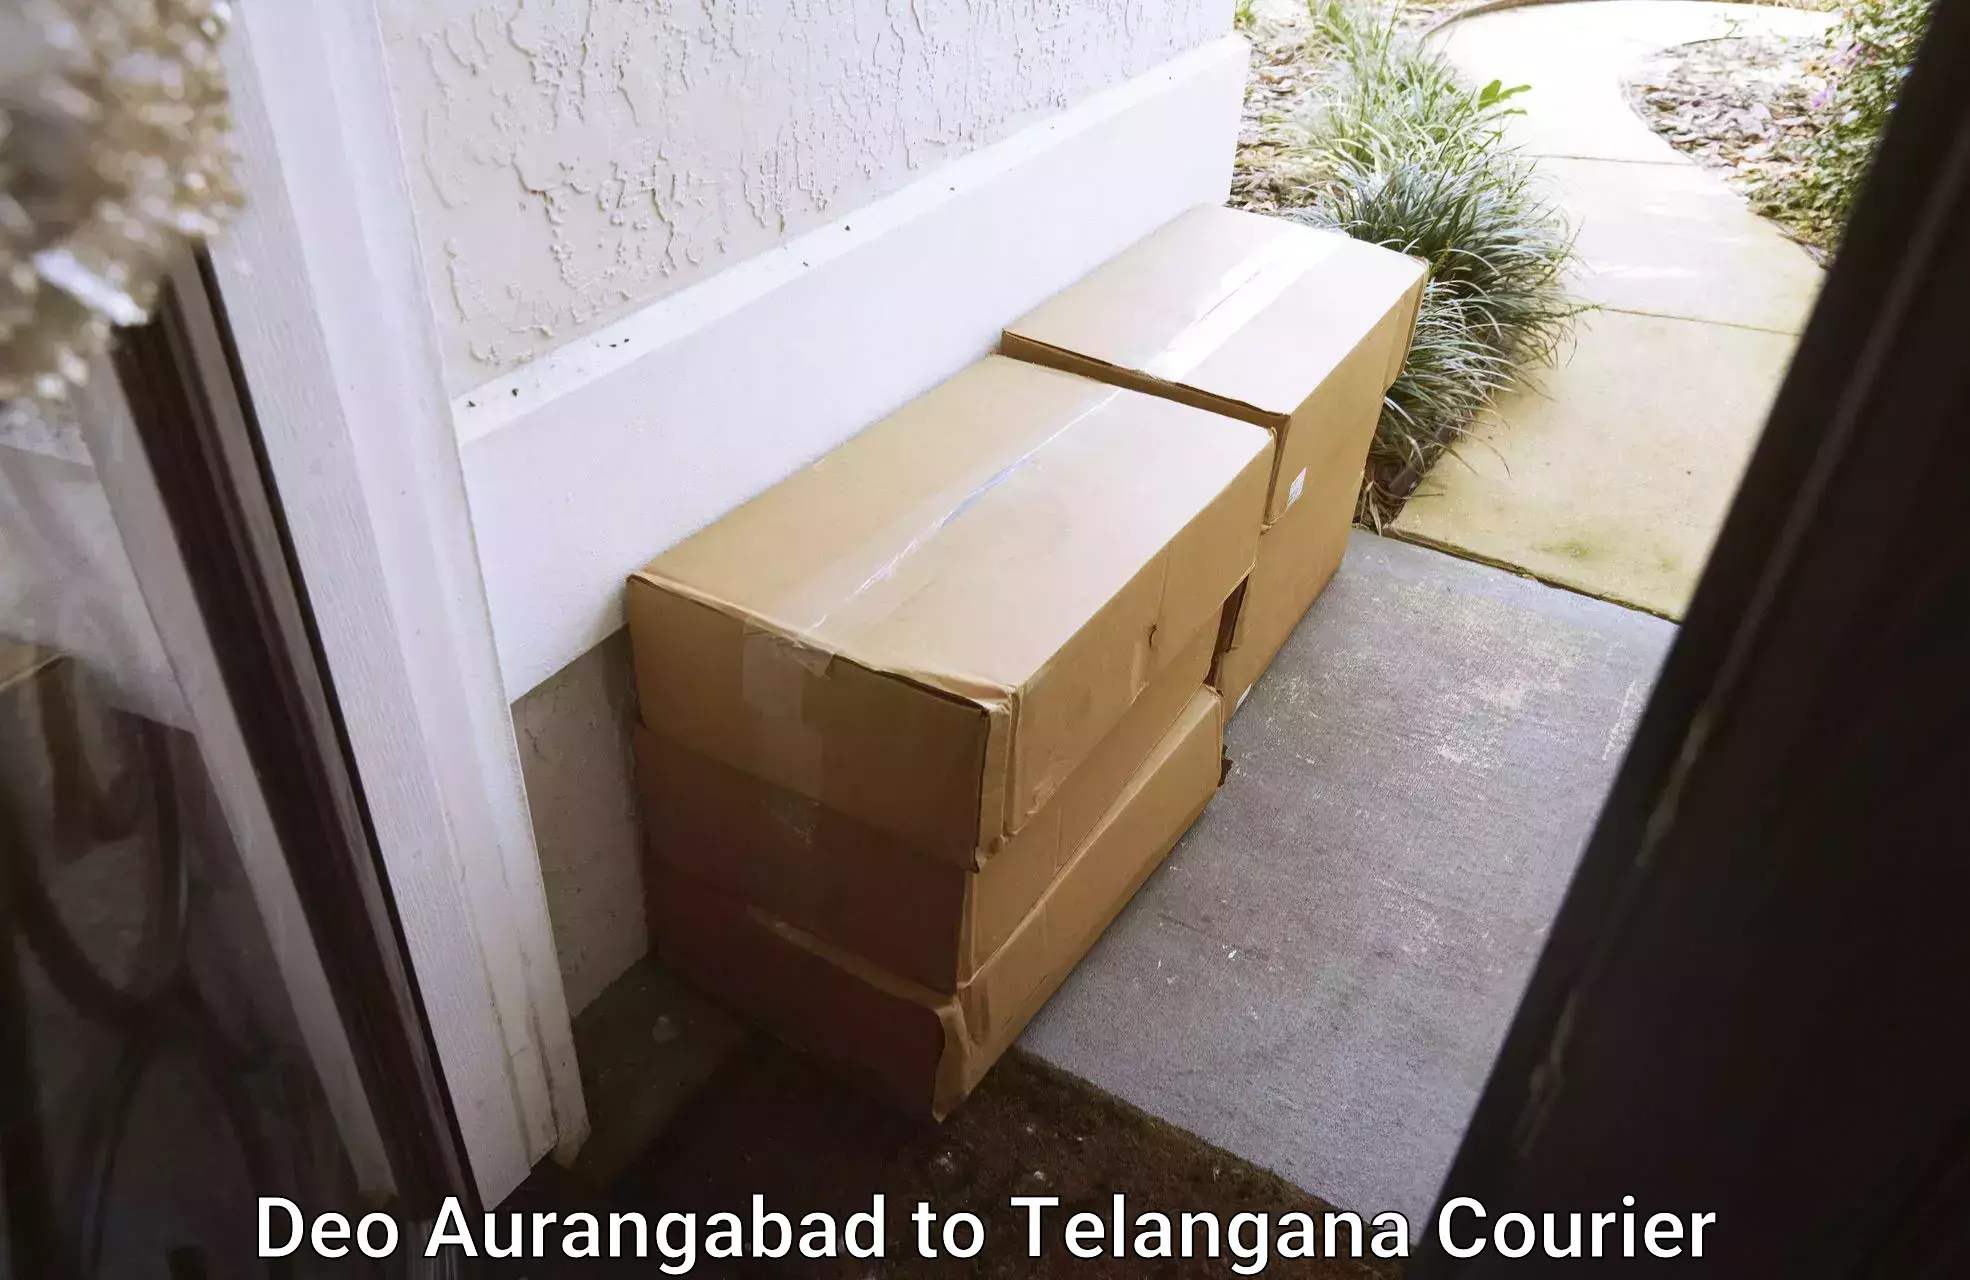 Expert goods movers Deo Aurangabad to Cherial